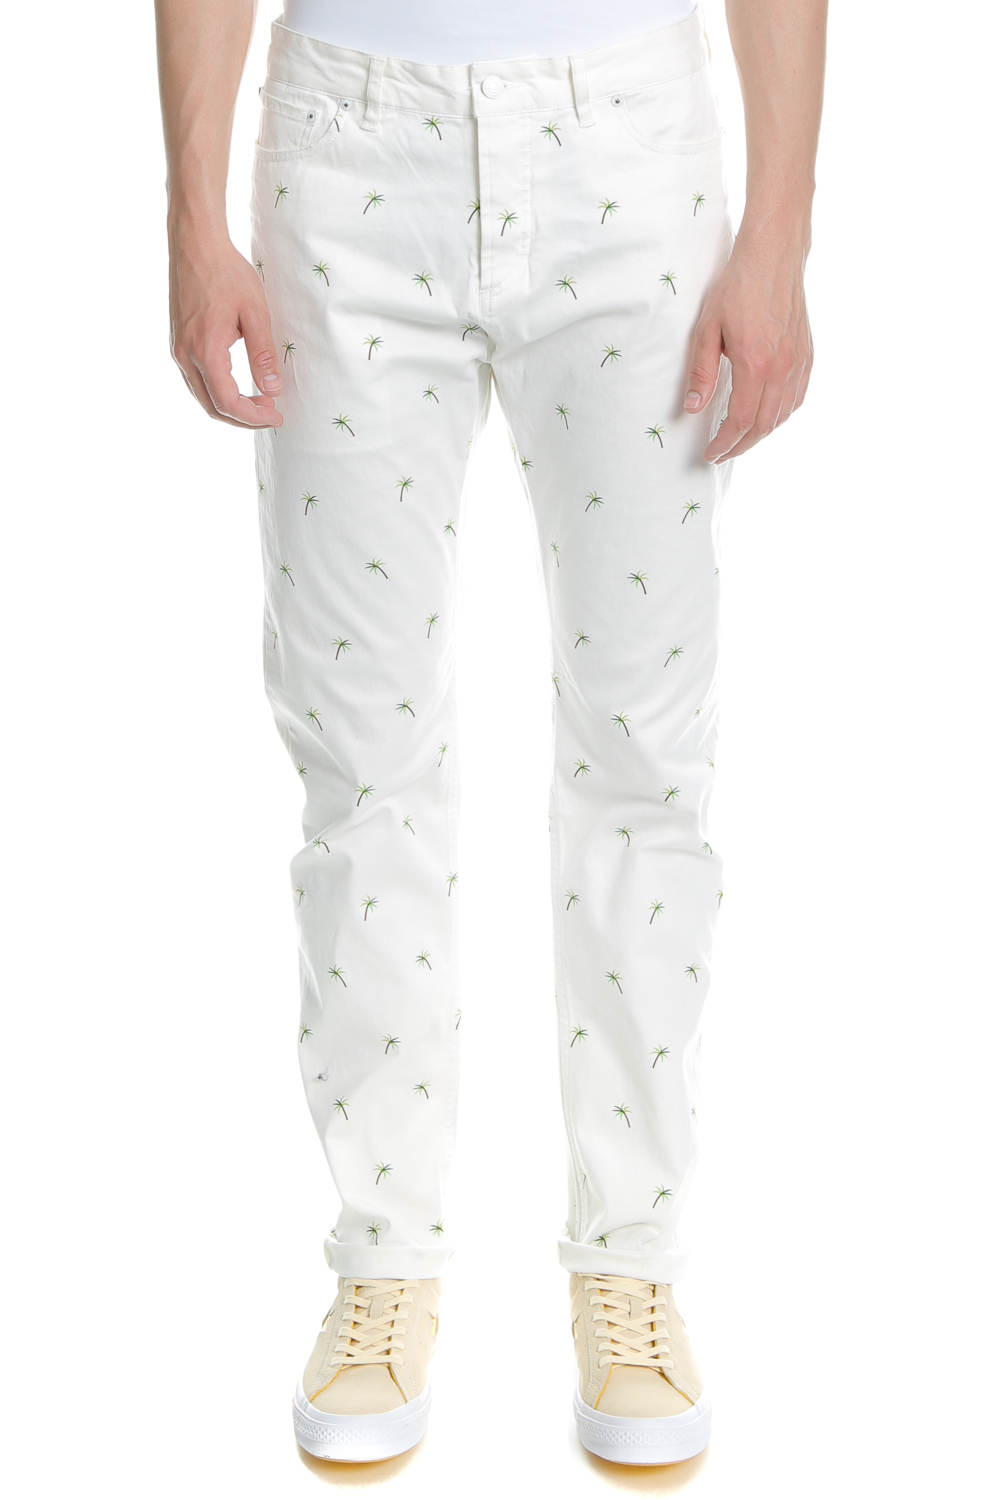 SCOTCH & SODA - Ανδρικό παντελόνι SCOTCH & SODA λευκό Ανδρικά/Ρούχα/Παντελόνια/Φαρδιά Γραμμή